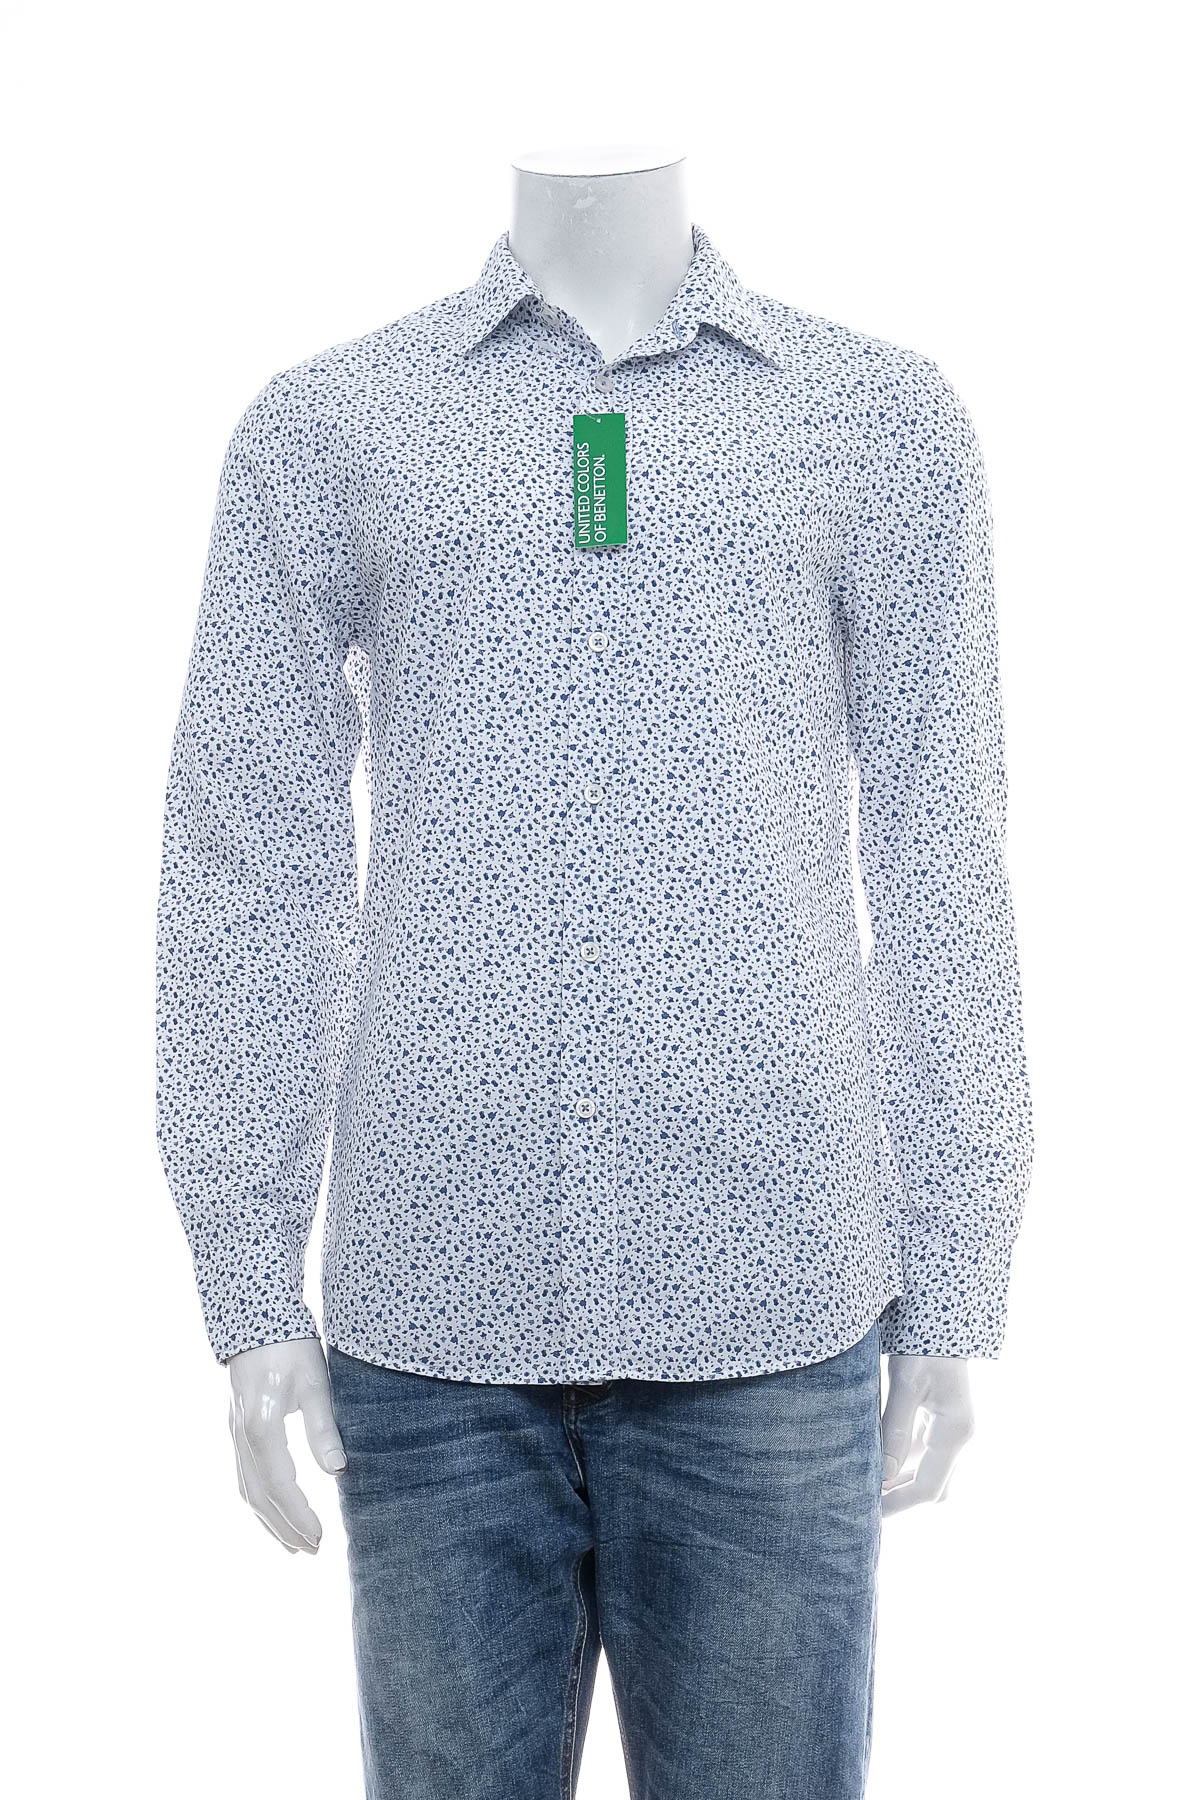 Ανδρικό πουκάμισο - United Colors of Benetton - 0